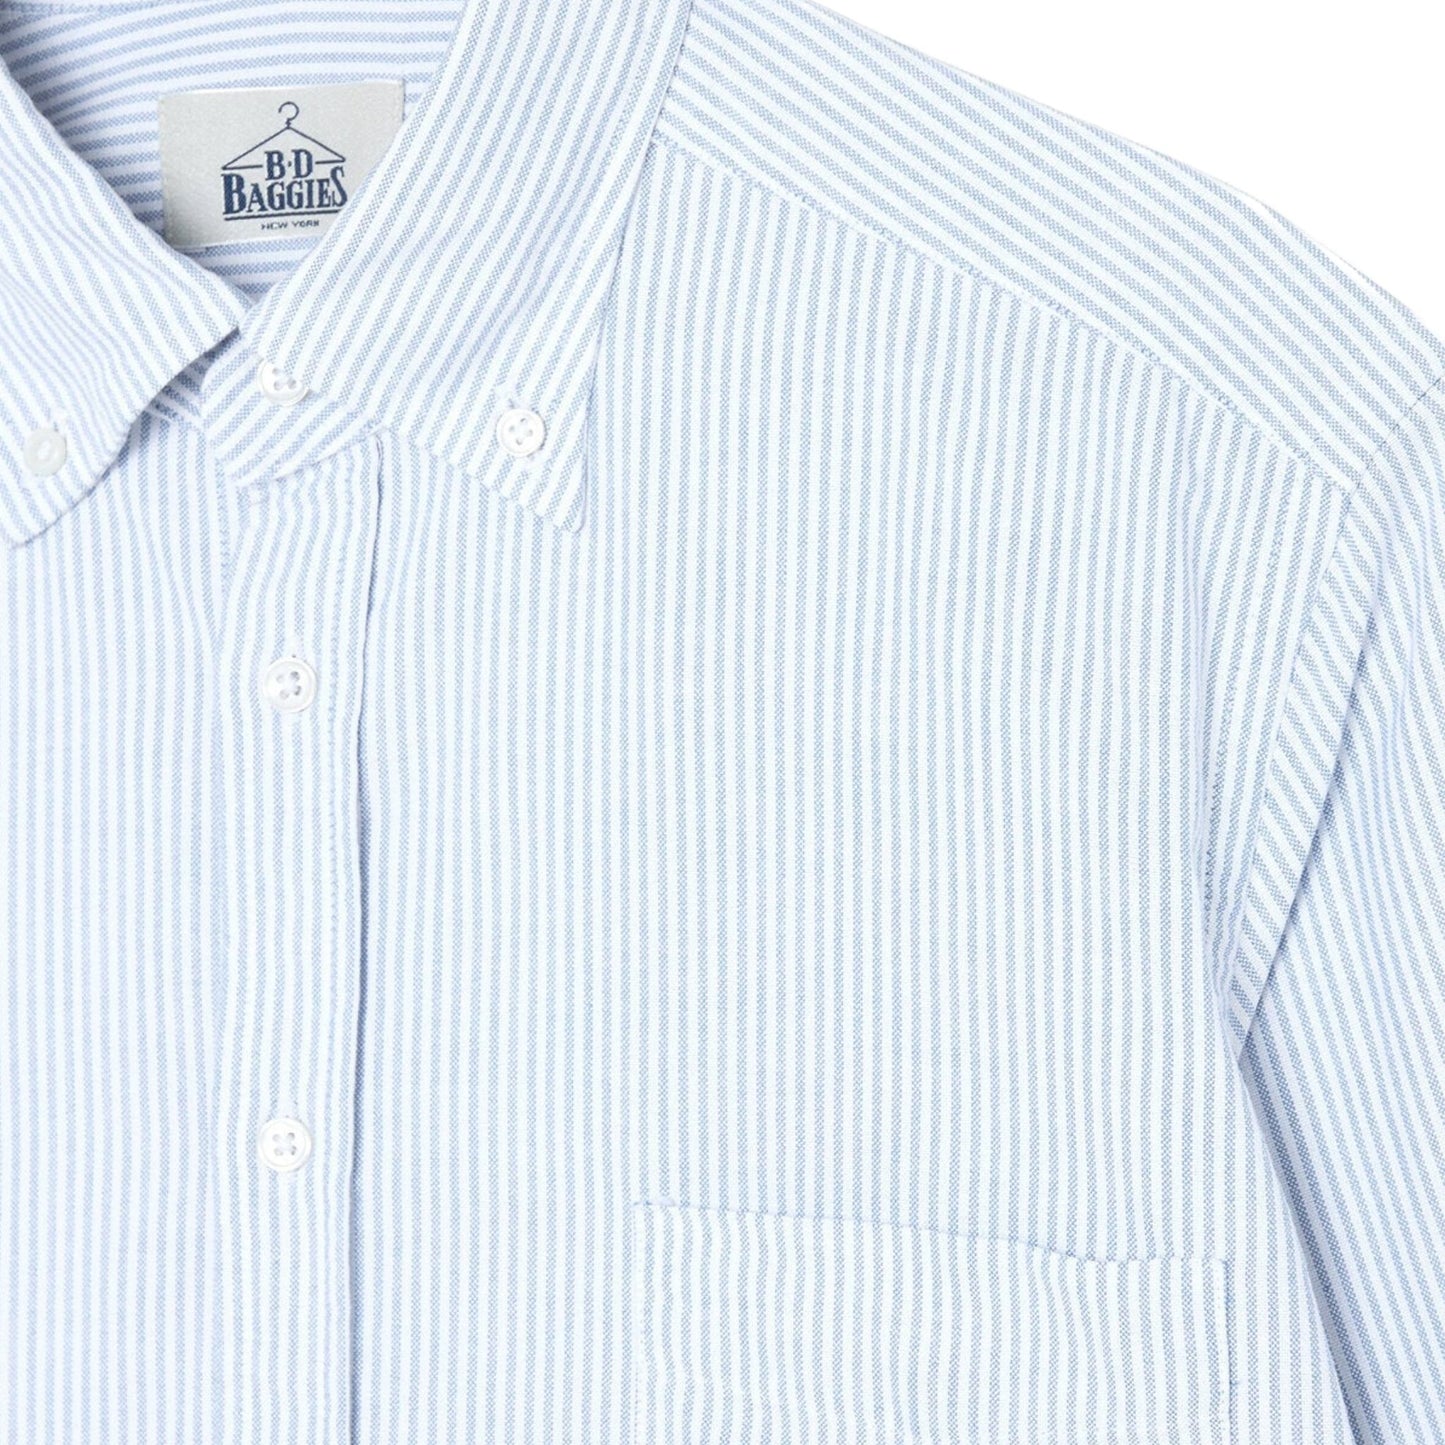 B.D. BAGGIES - Bradford Oxford Stripe Shirt